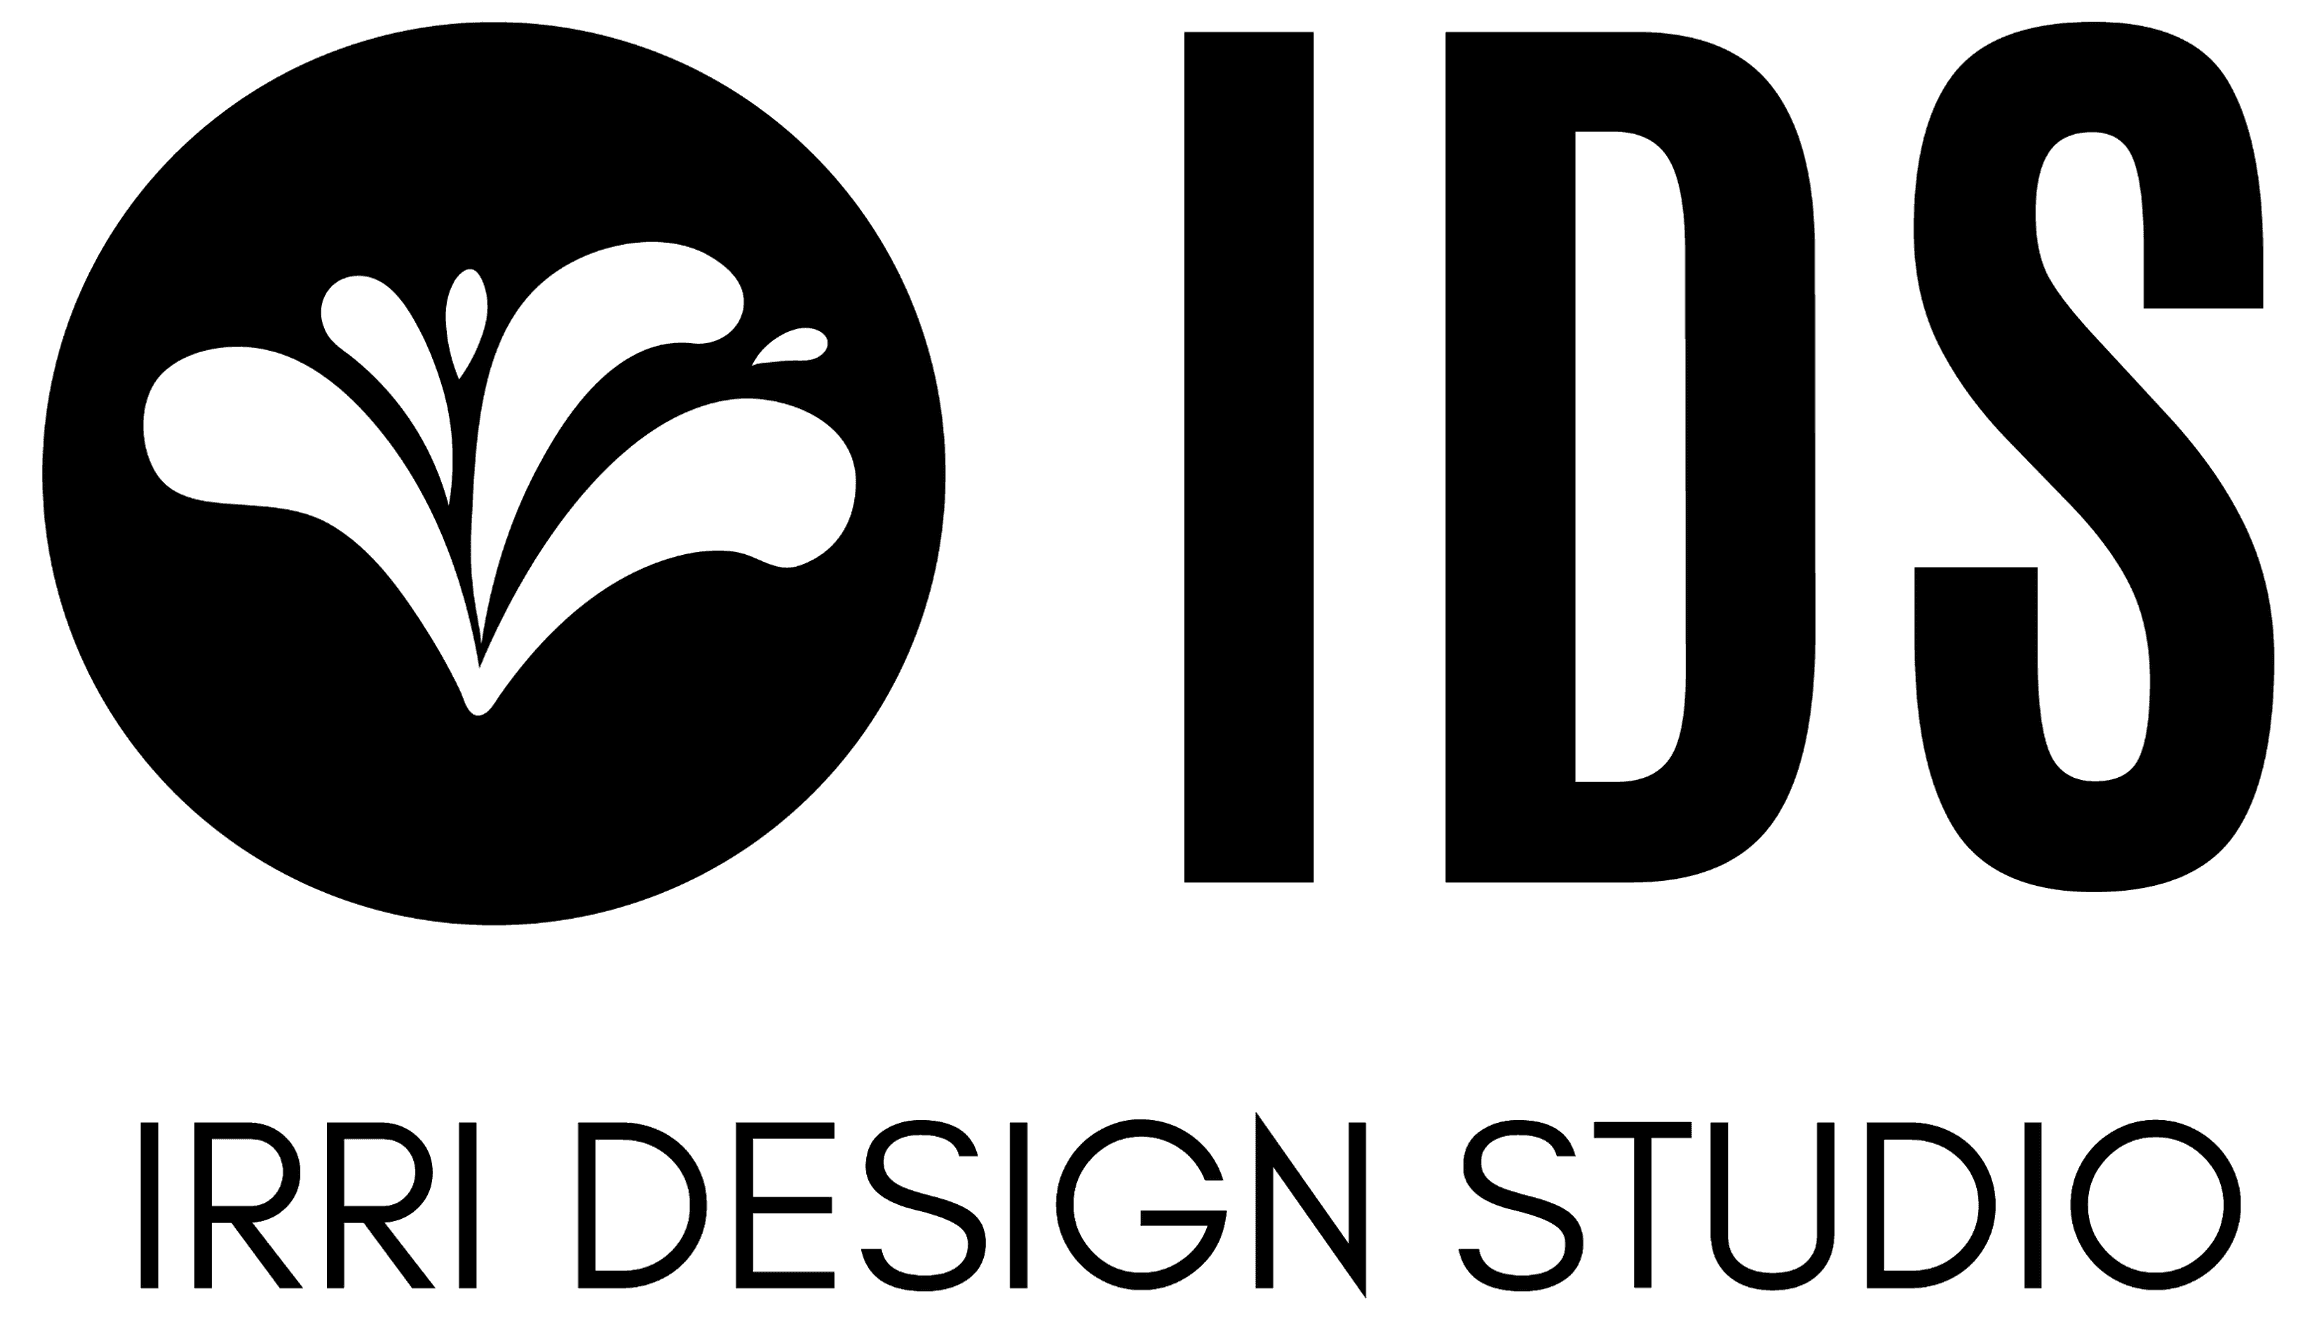 Irrigation Design and Consulting Firm in Florida | California - Irri Design Studio